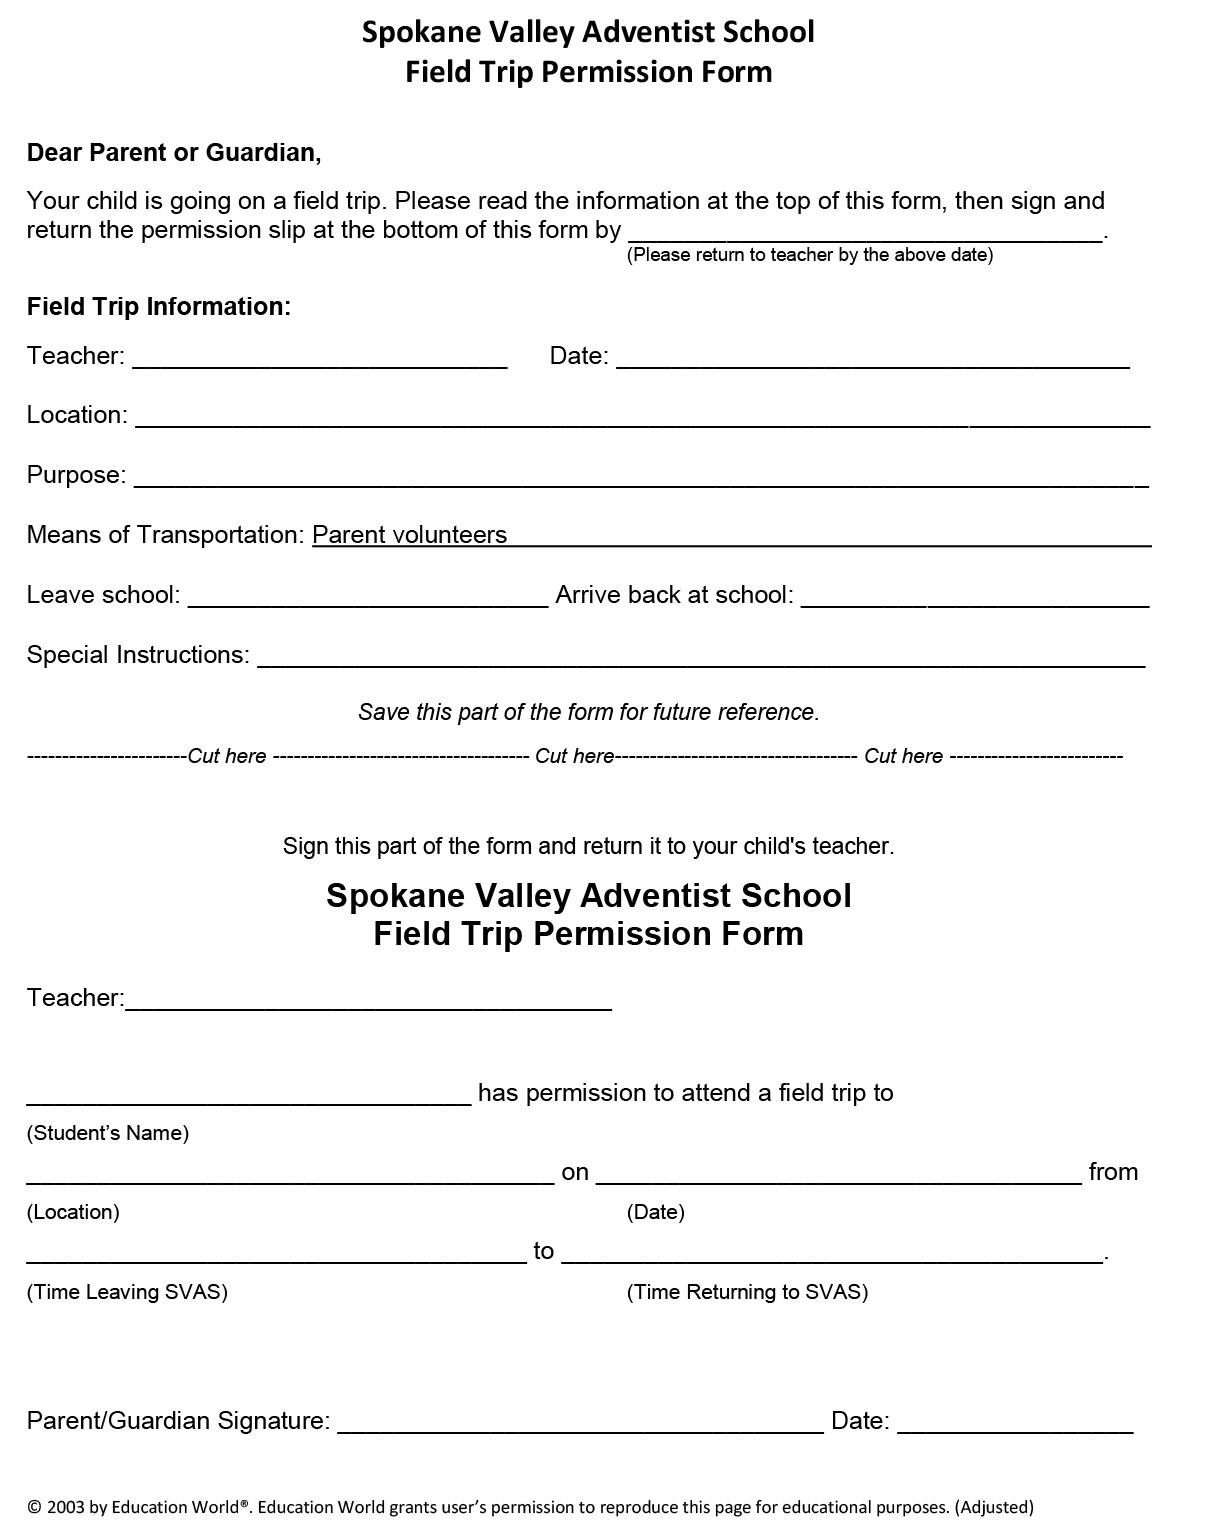 field-trip-form-spokane-valley-adventist-school